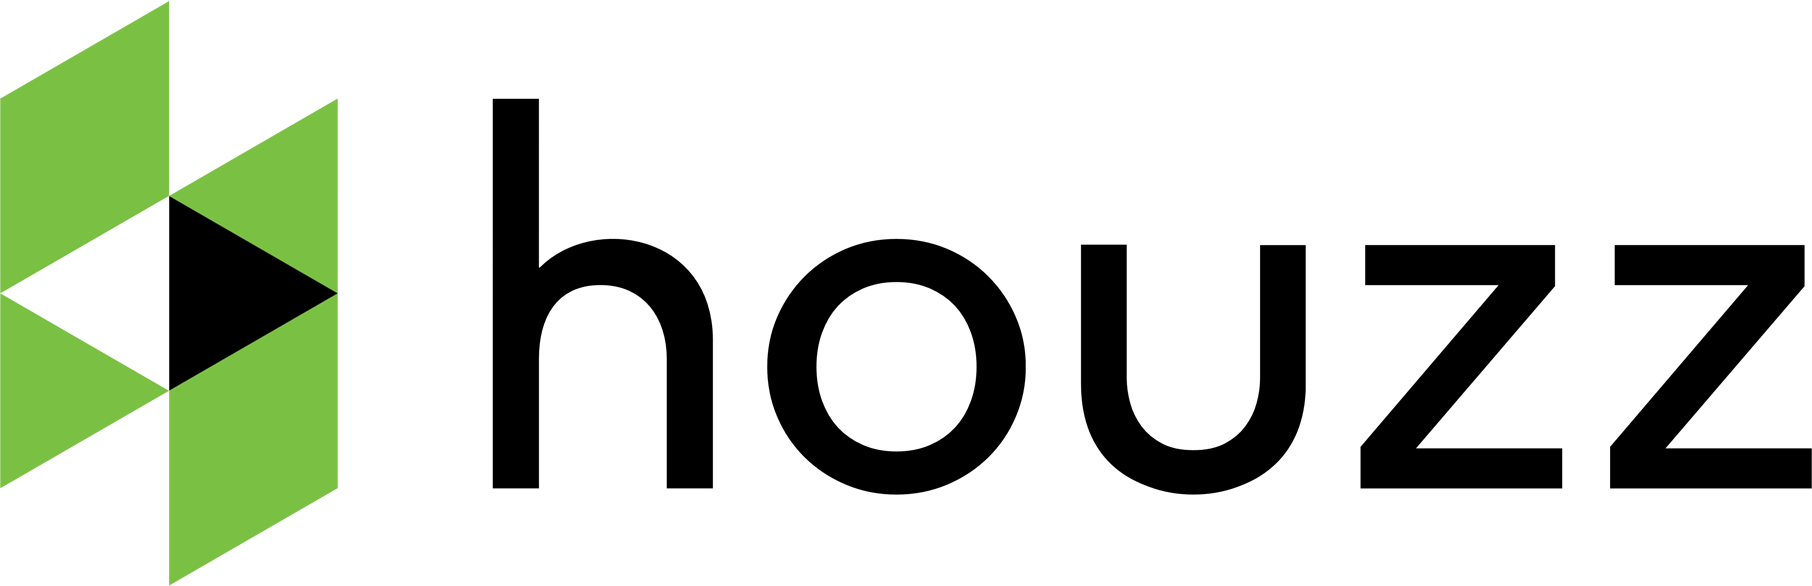 Houzz Logo - Image - Houzz-Logo.png | Logopedia | FANDOM powered by Wikia